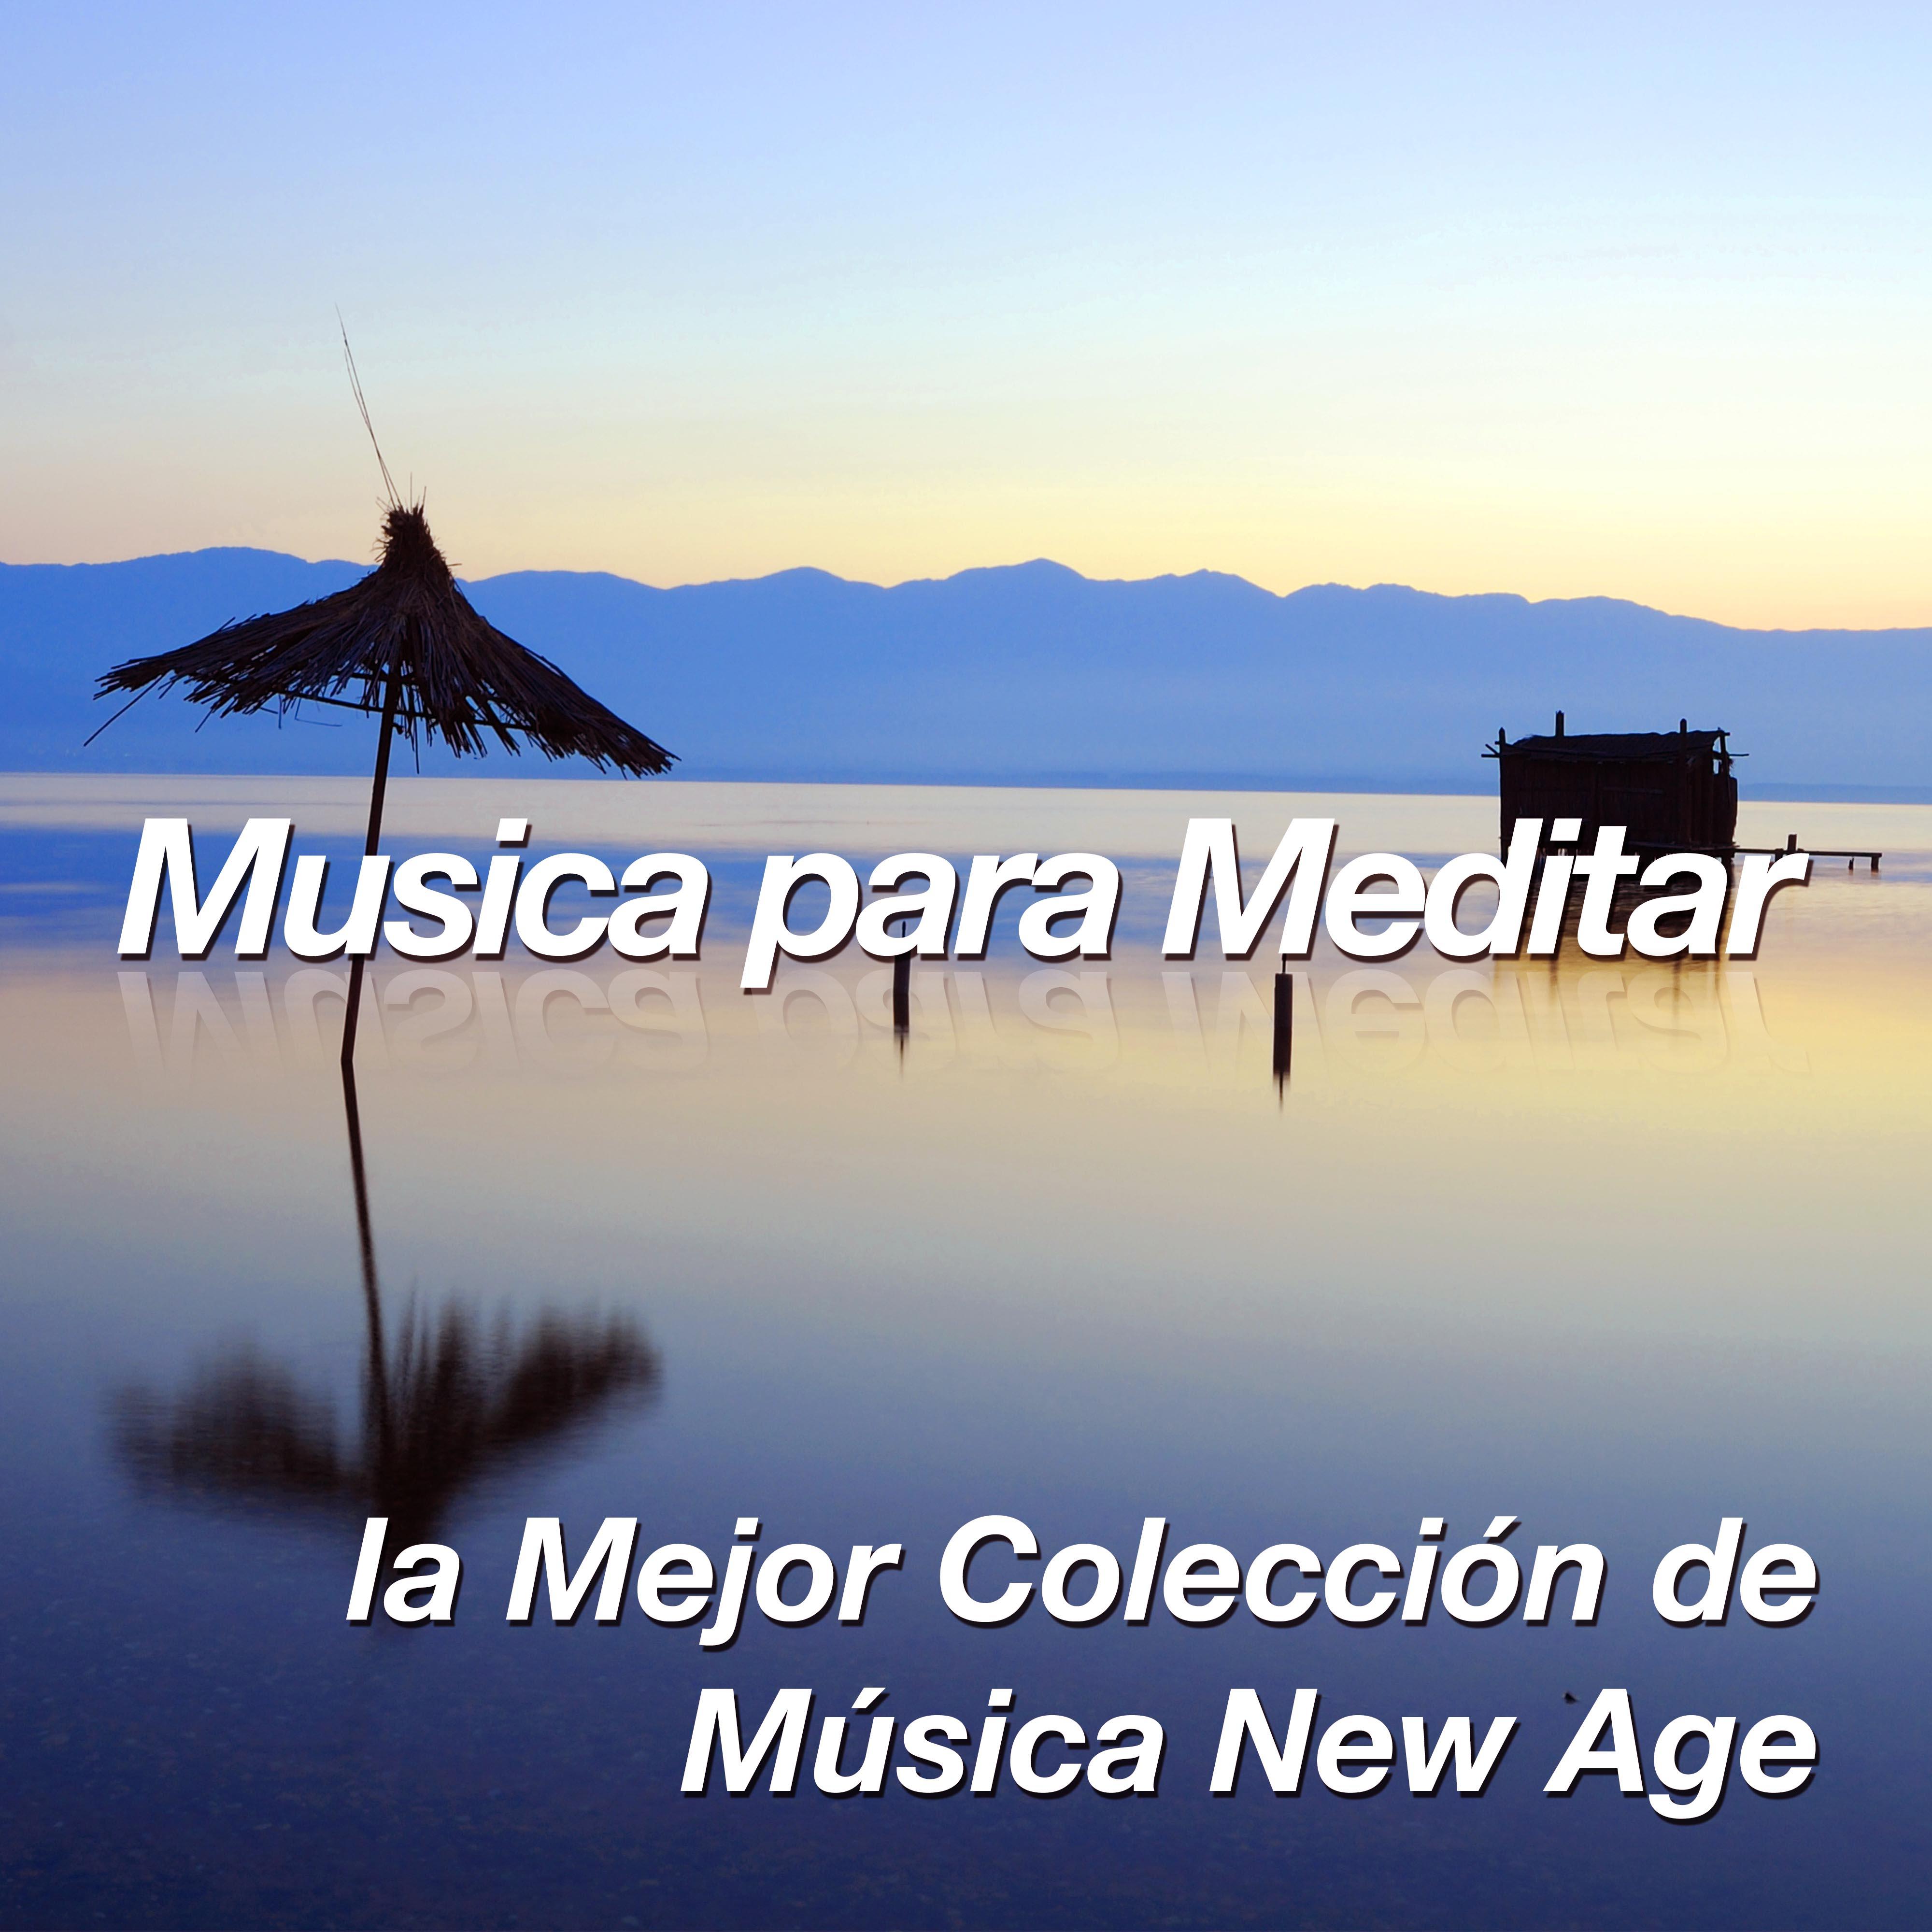 Musica para Meditar: la Mejor Colección de Música New Age Espiritual de Piano para el Relajamiento y lograr la Paz, Encontrar la Calma y Combatir el Estrés, la Ansiedad, la Ira y la Mente Agitada